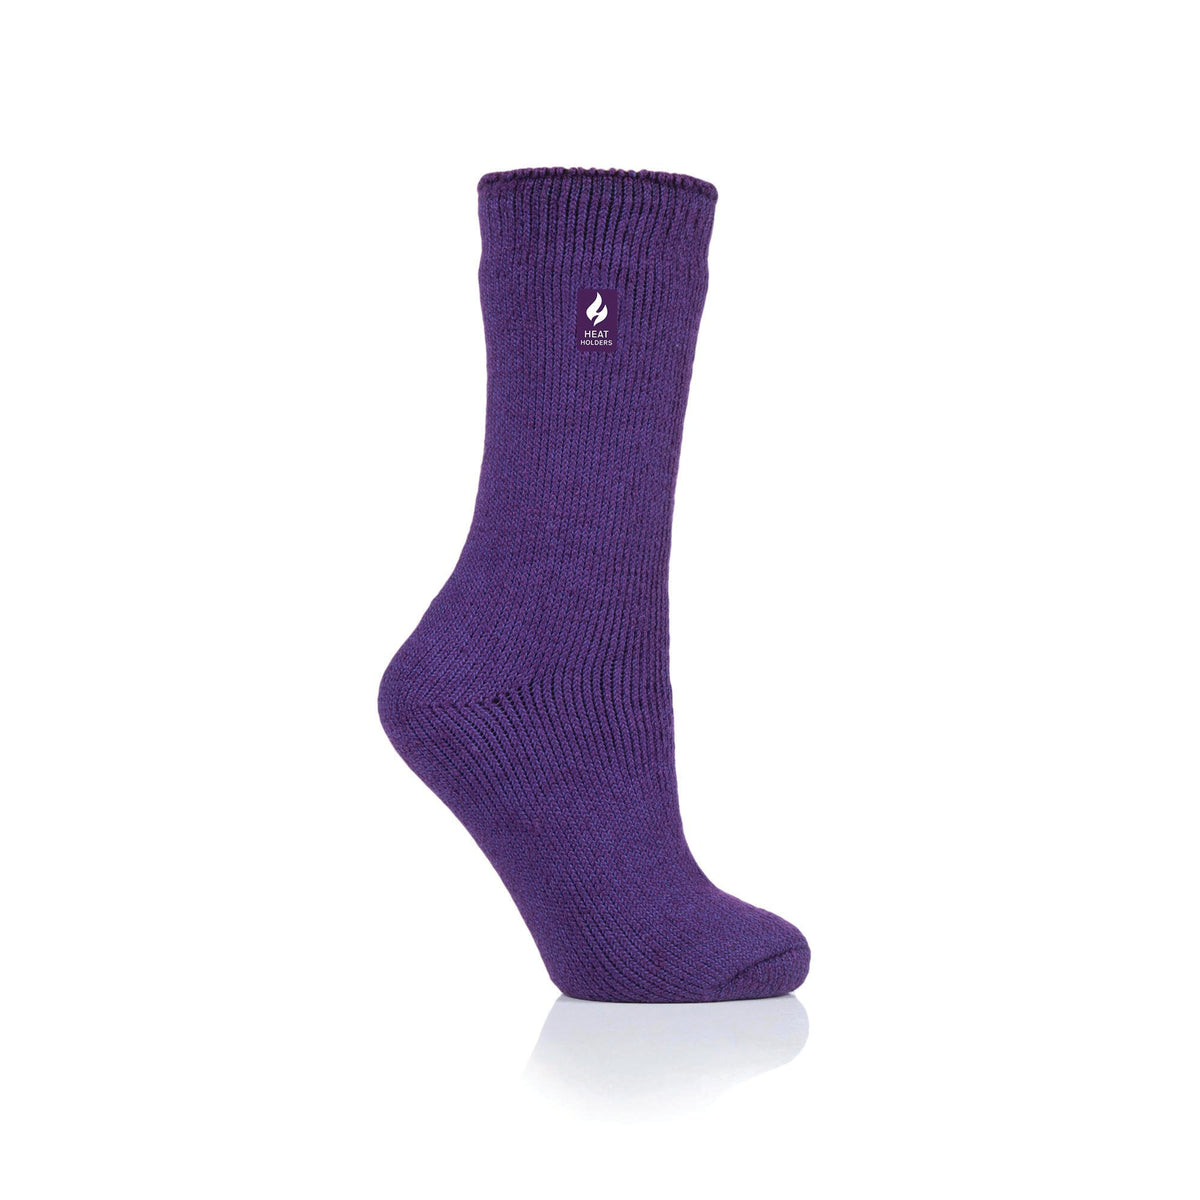 Ladies Original Lisbon Heel & Toe Socks - Muted Pink – Heat Holders